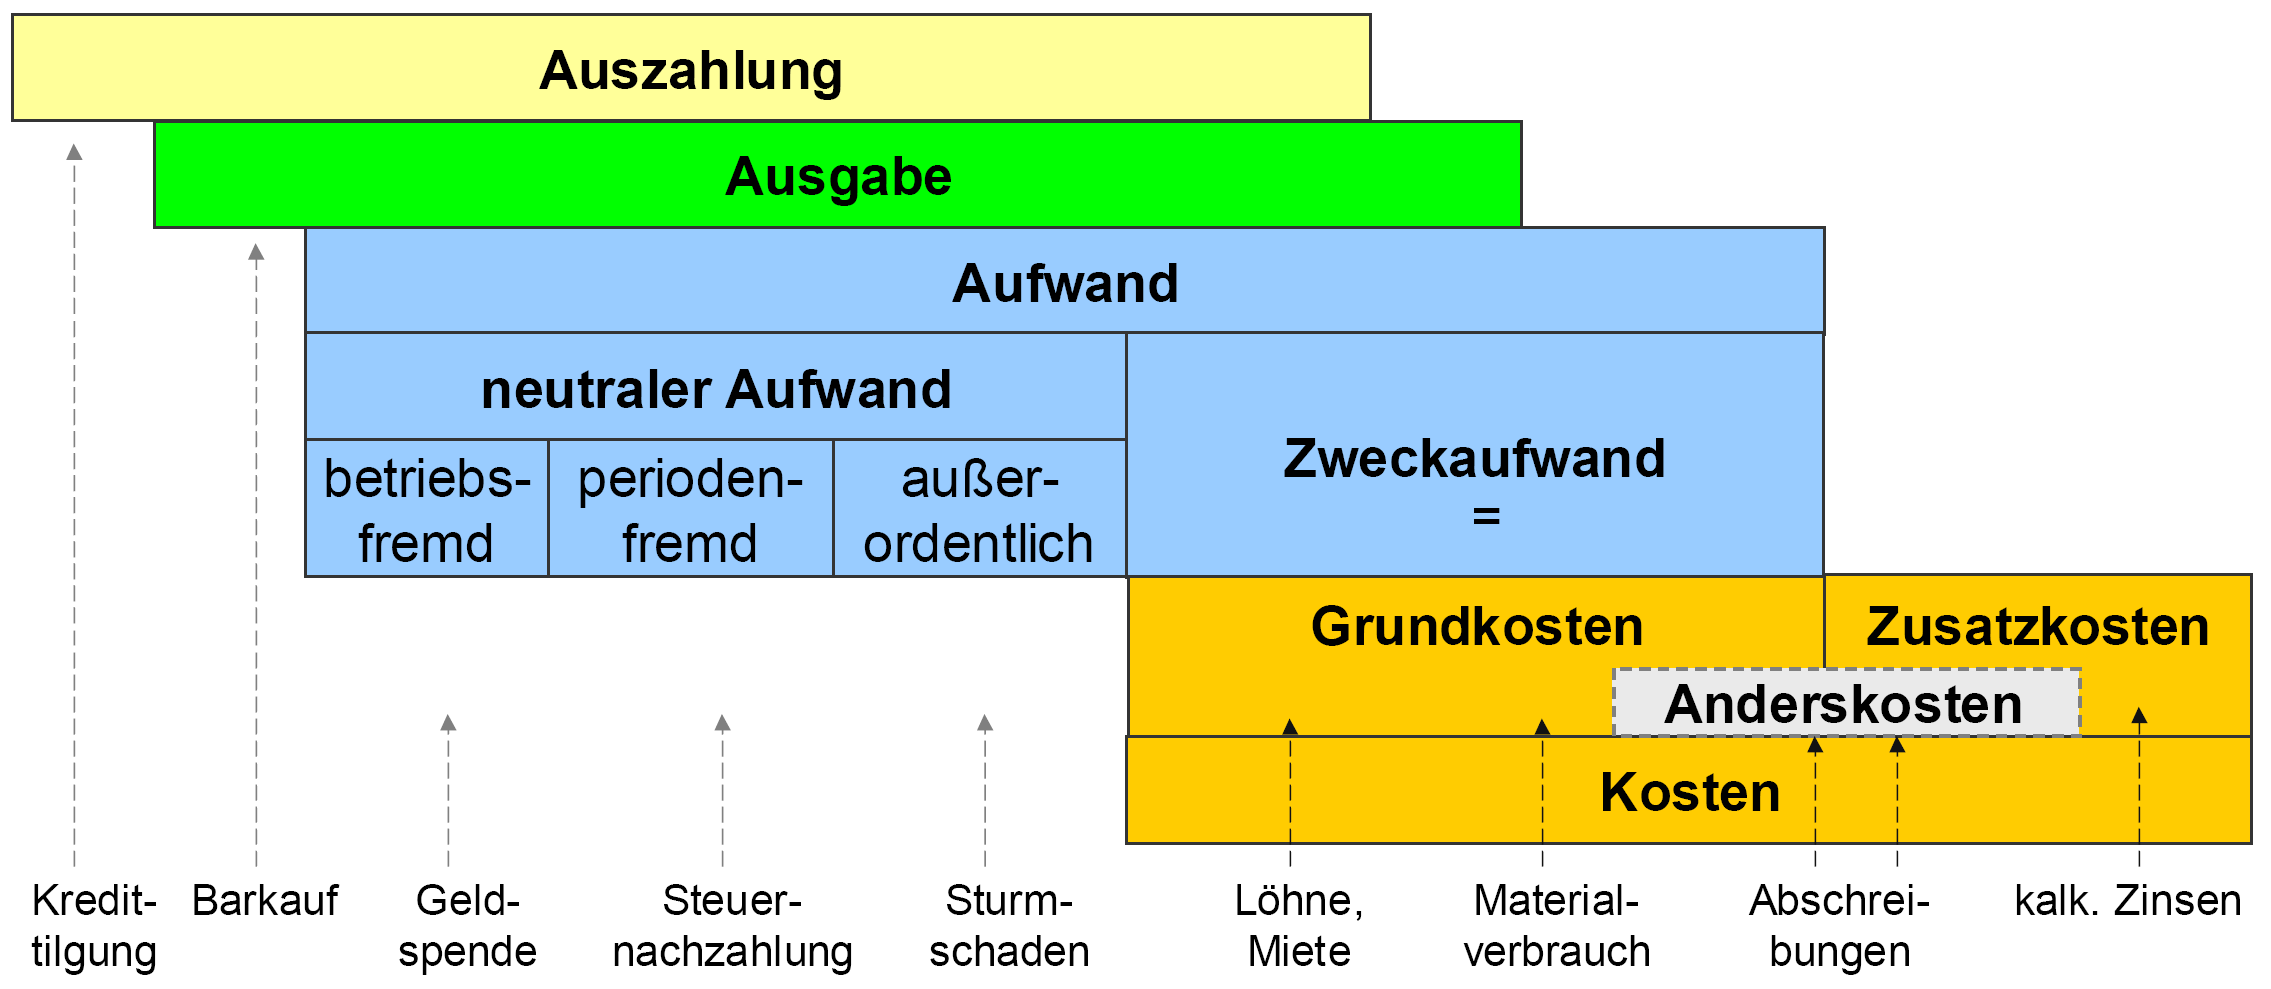 Der betriebliche Leistungsprozess 34 In der folgenden Übersicht wird eine vollständige Abgrenzung der Rechengrößen basierend auf der so genannten Schmalenbach-Treppe dargestellt.